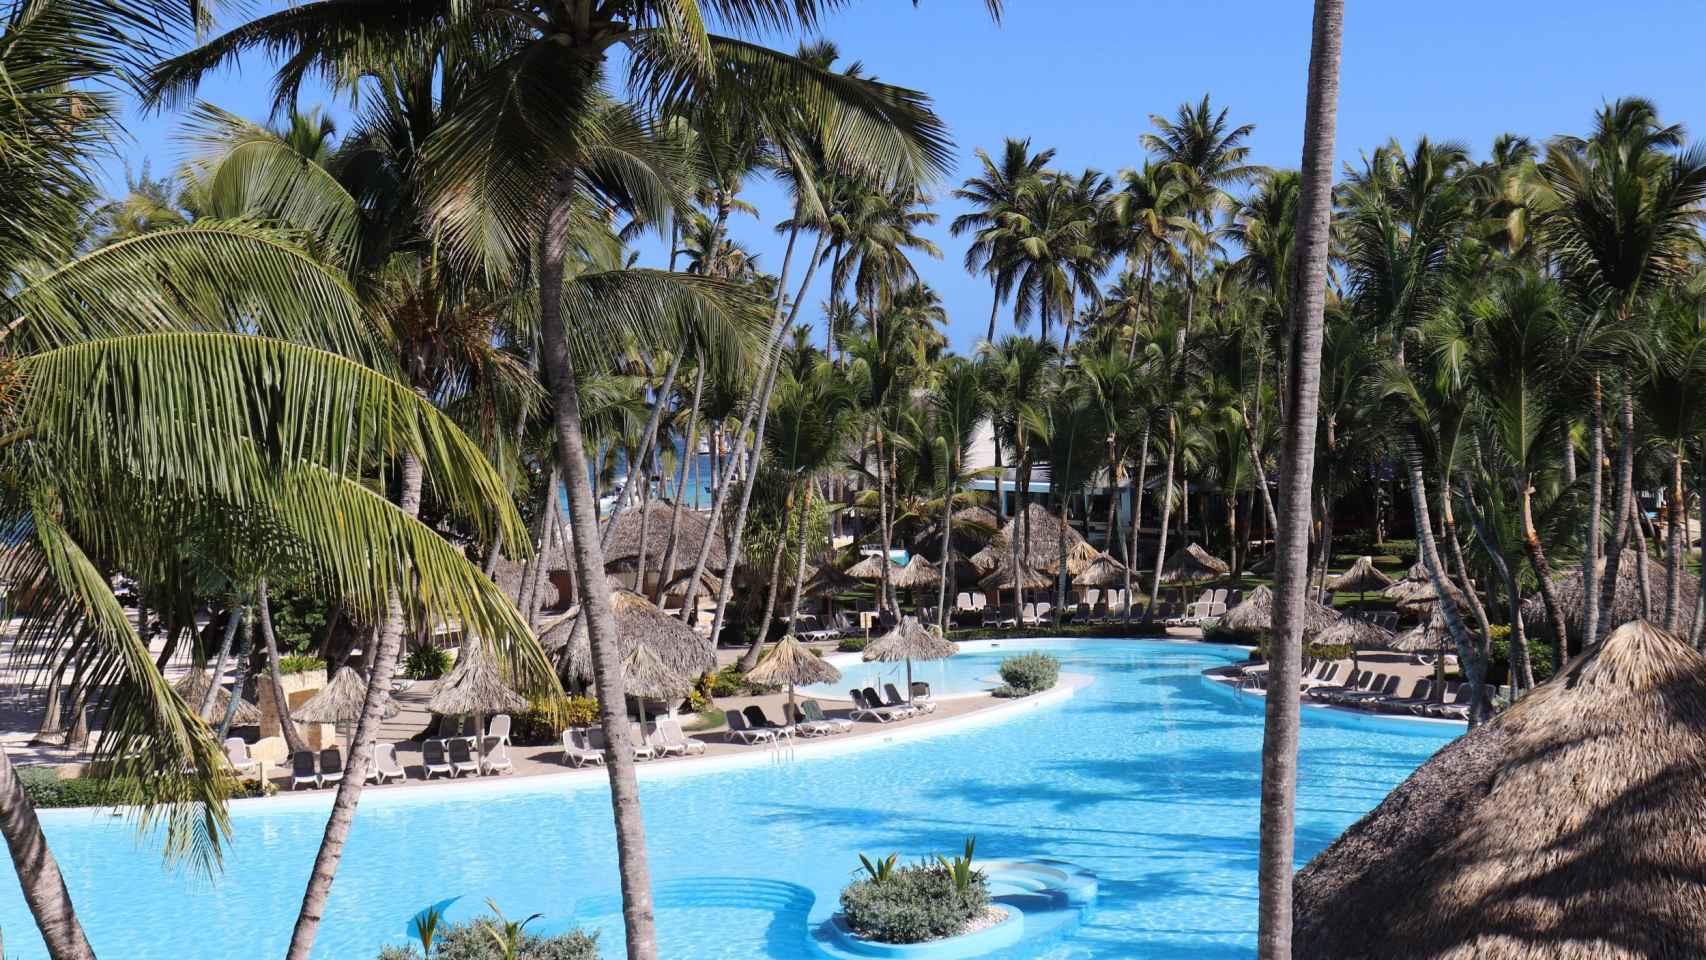 Hotel ubicado en Punta Cana con una piscina y múltiples palmeras